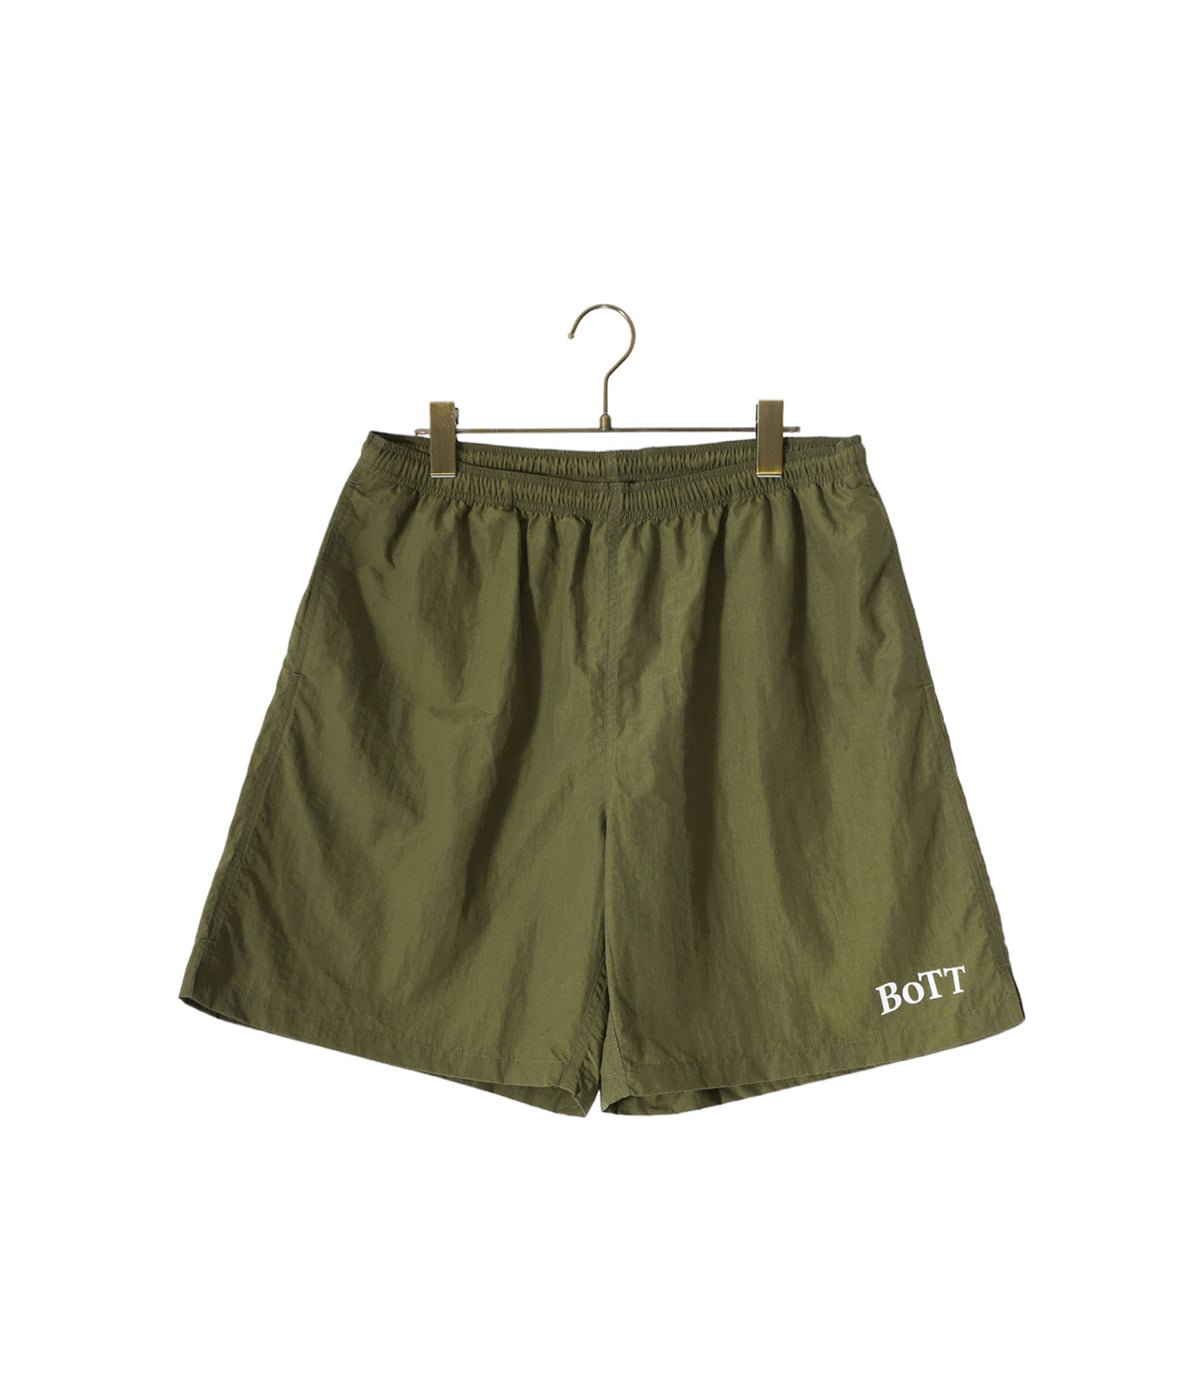 Basic Swim Short | BOTT(ボット) / パンツ ハーフ・ショートパンツ 